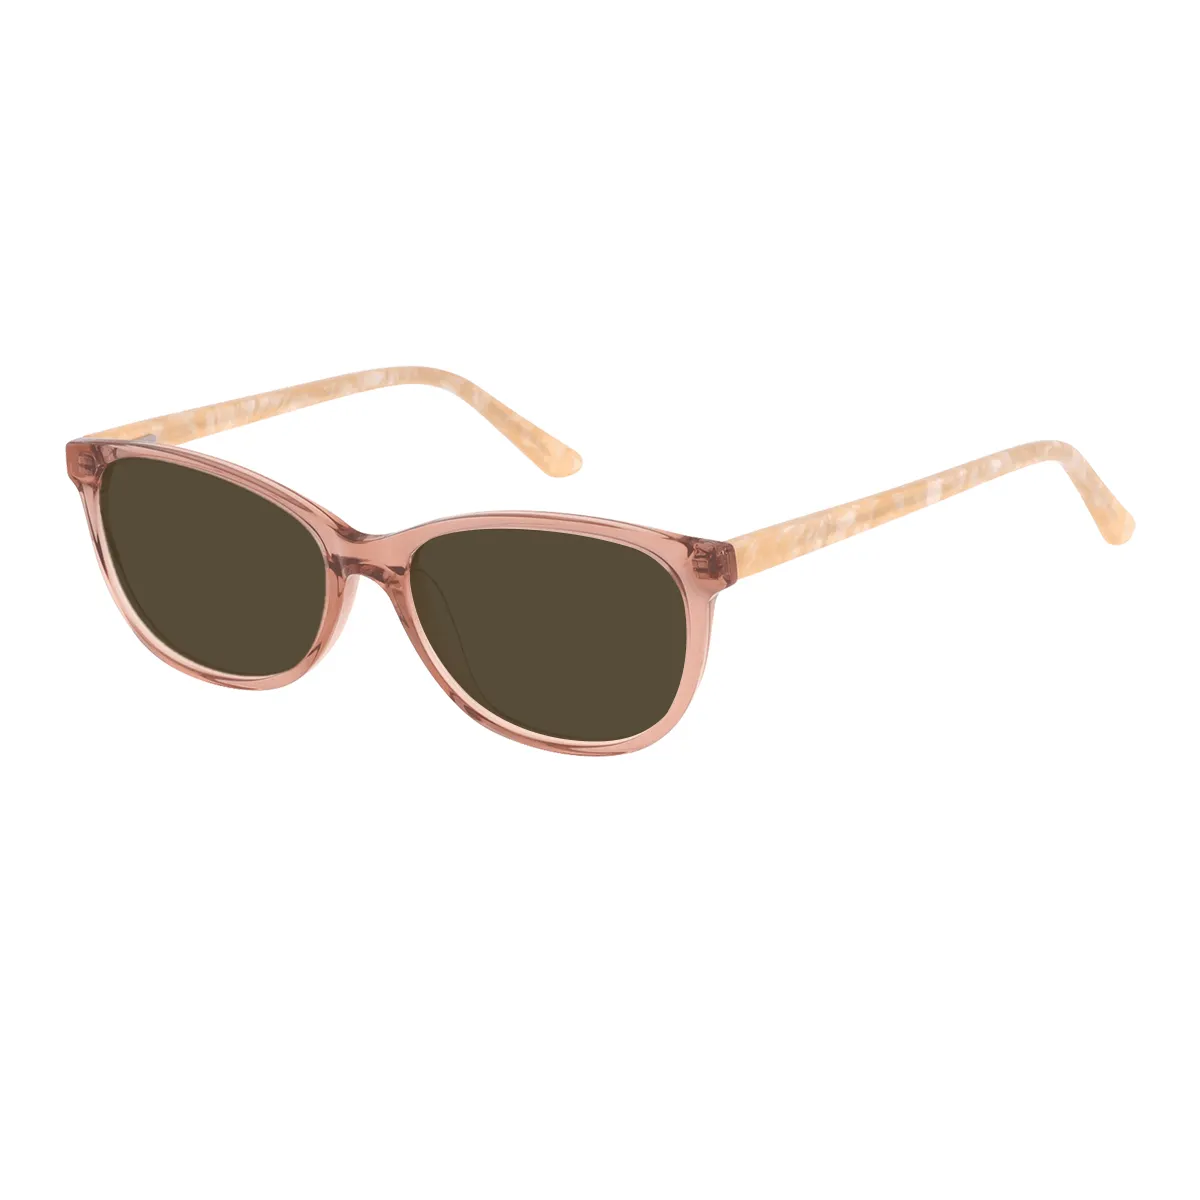 Tillie - Oval Orange Sunglasses for Women